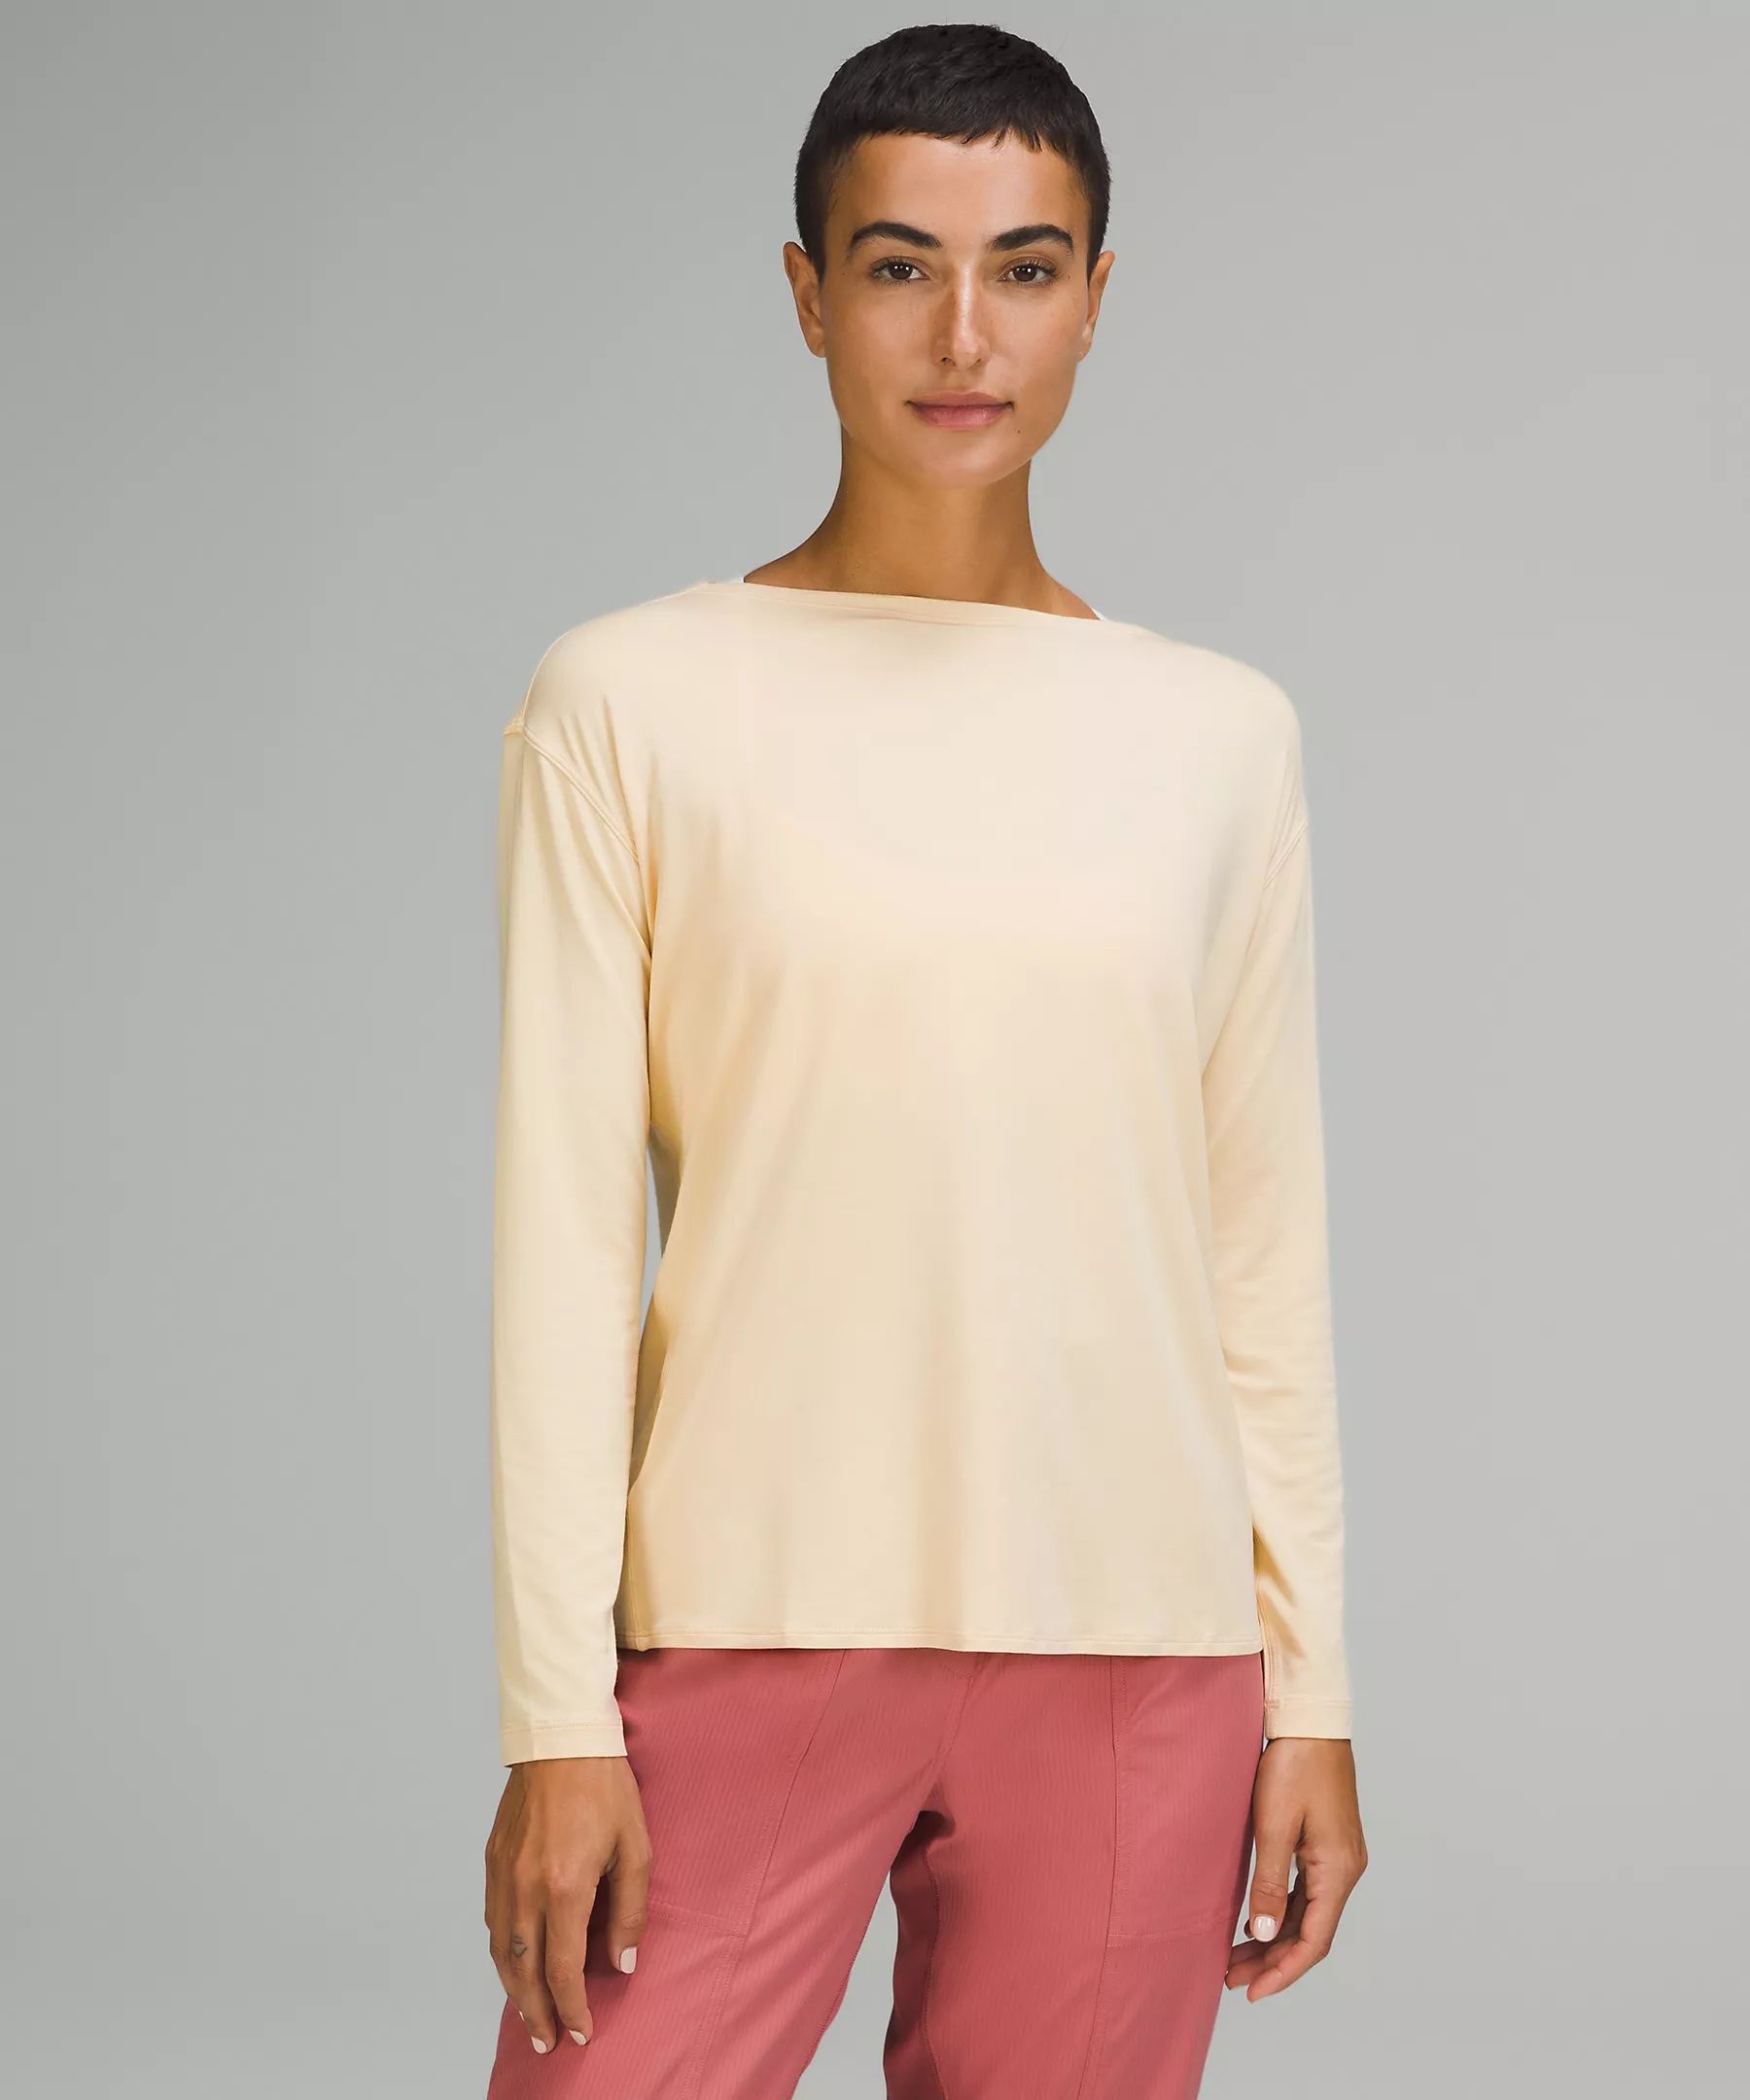 Modal-Blend Open-Back Long Sleeve Shirt | Lululemon (US)